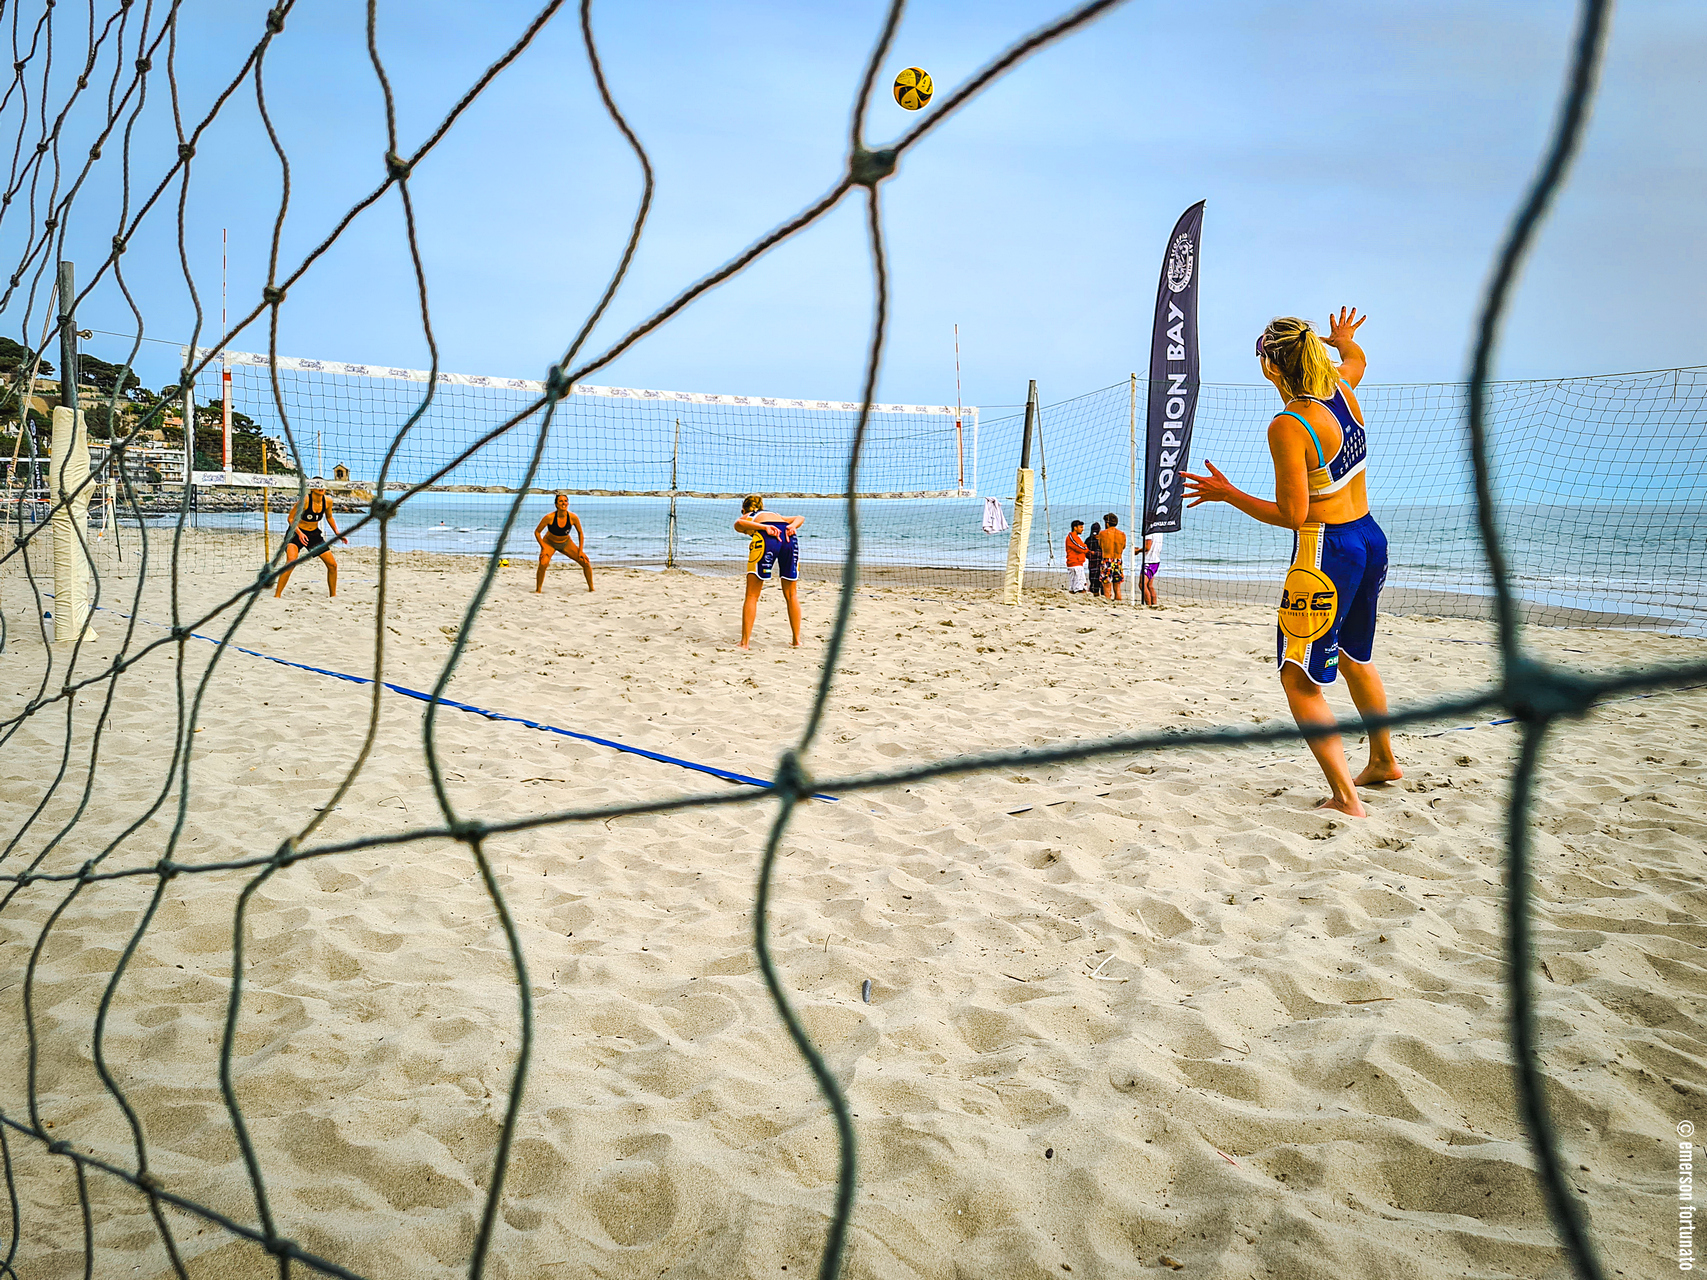 Grande ritorno del beach volley ad Alassio con  il Campionato italiano per società targato Riviera Beach Volley